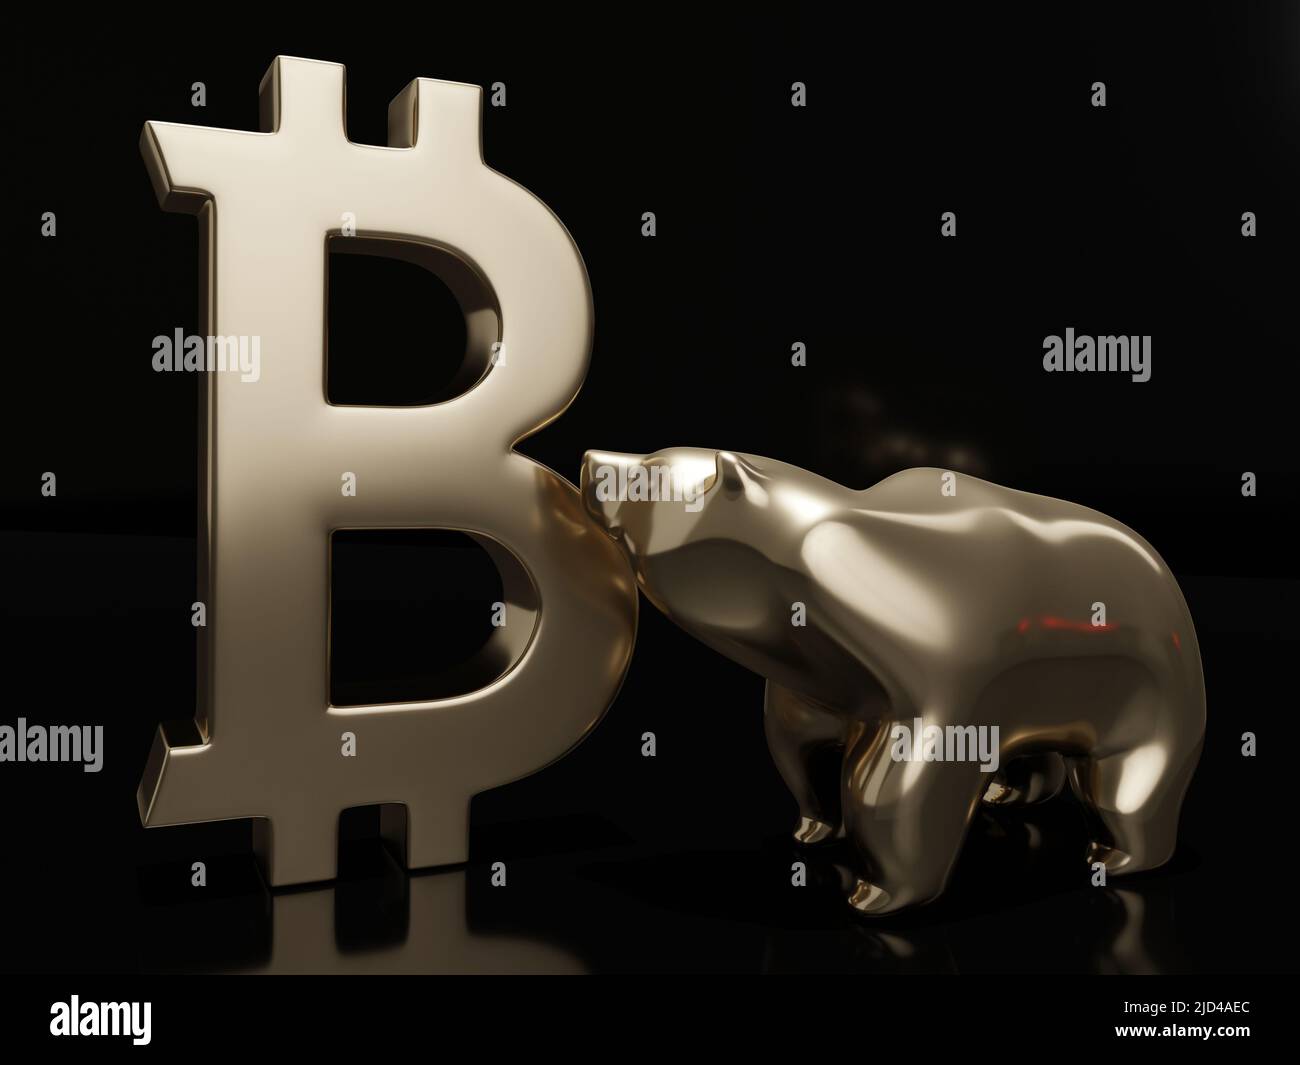 3d rendu du symbole bitcoin et de l'ours sur fond sombre. Concept de marché baissier Bitcoin. Banque D'Images